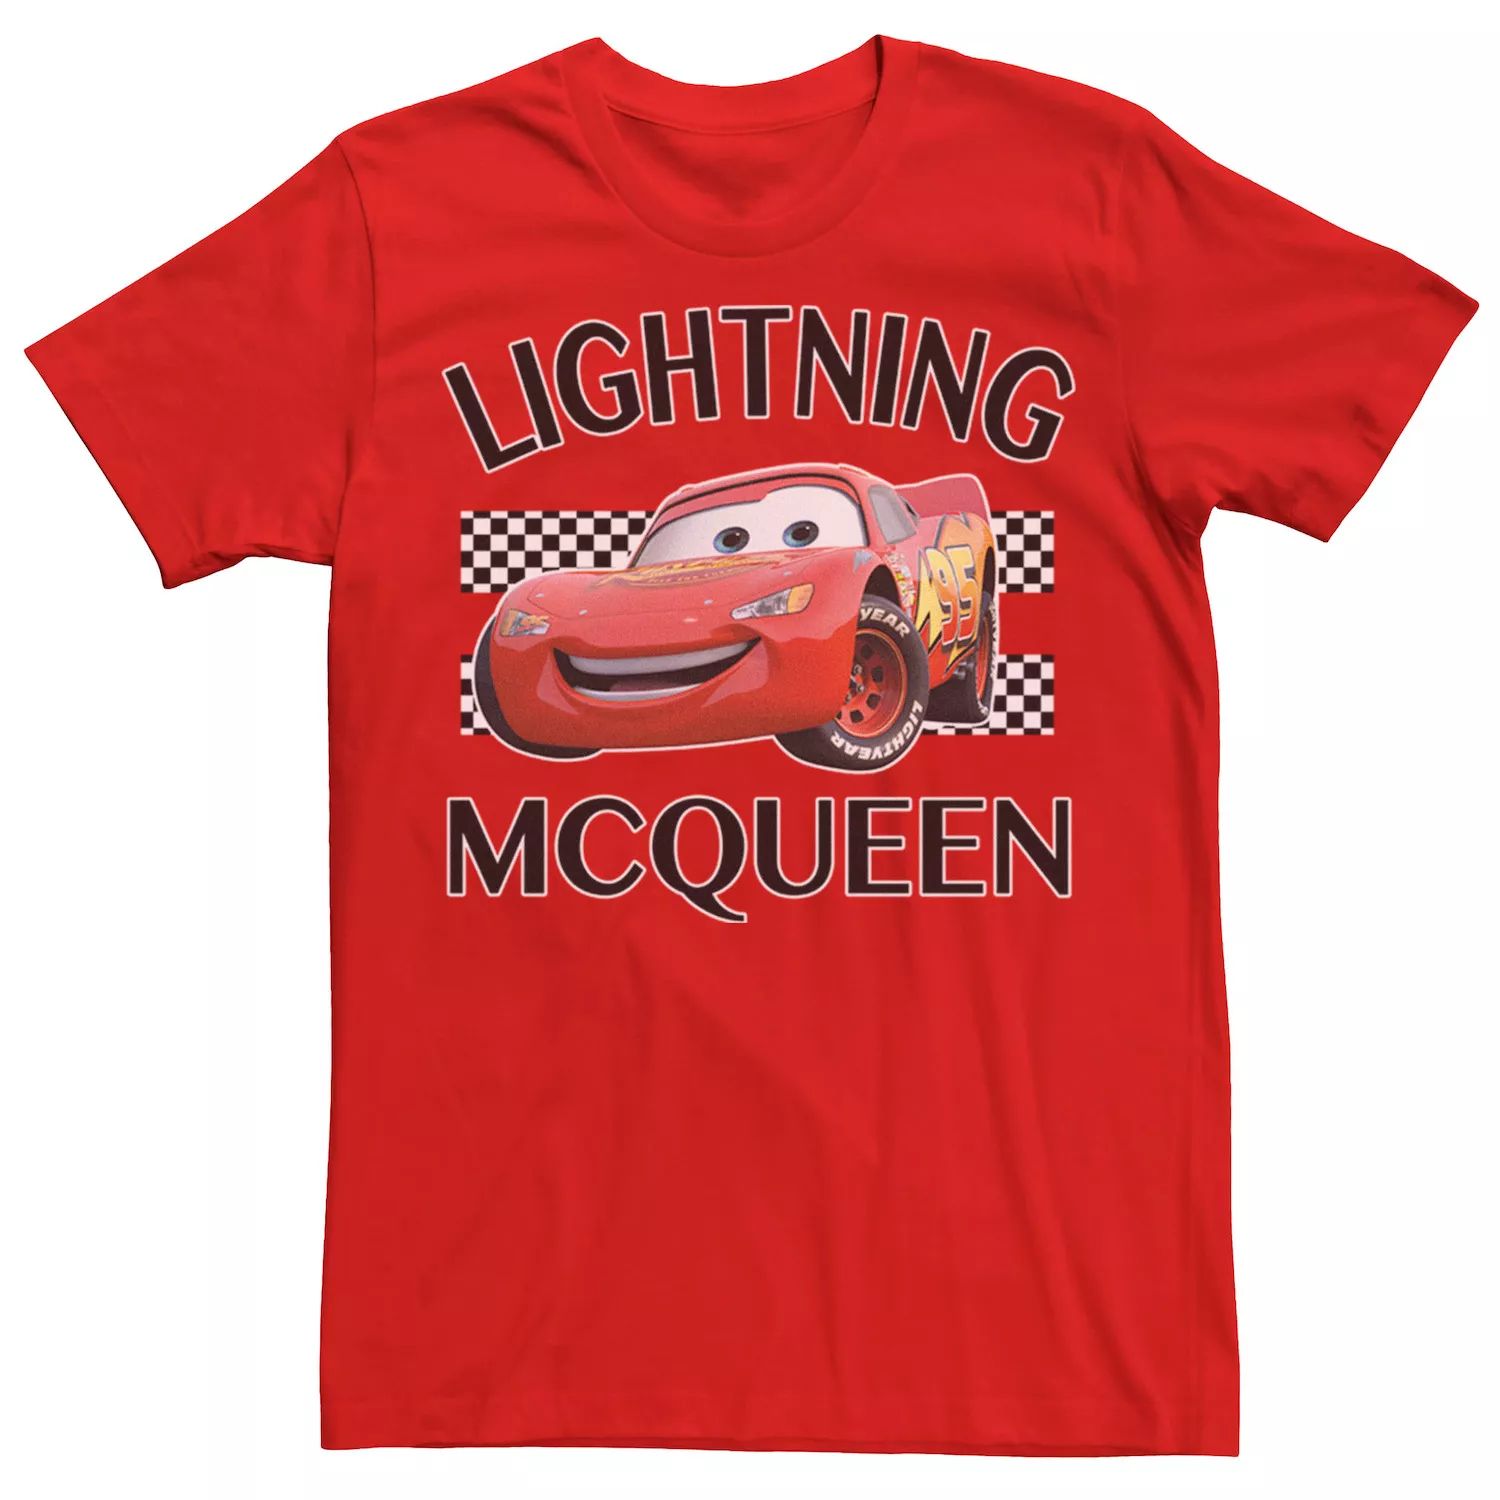 Мужская футболка с отделкой Lightning McQueen Cars Disney / Pixar